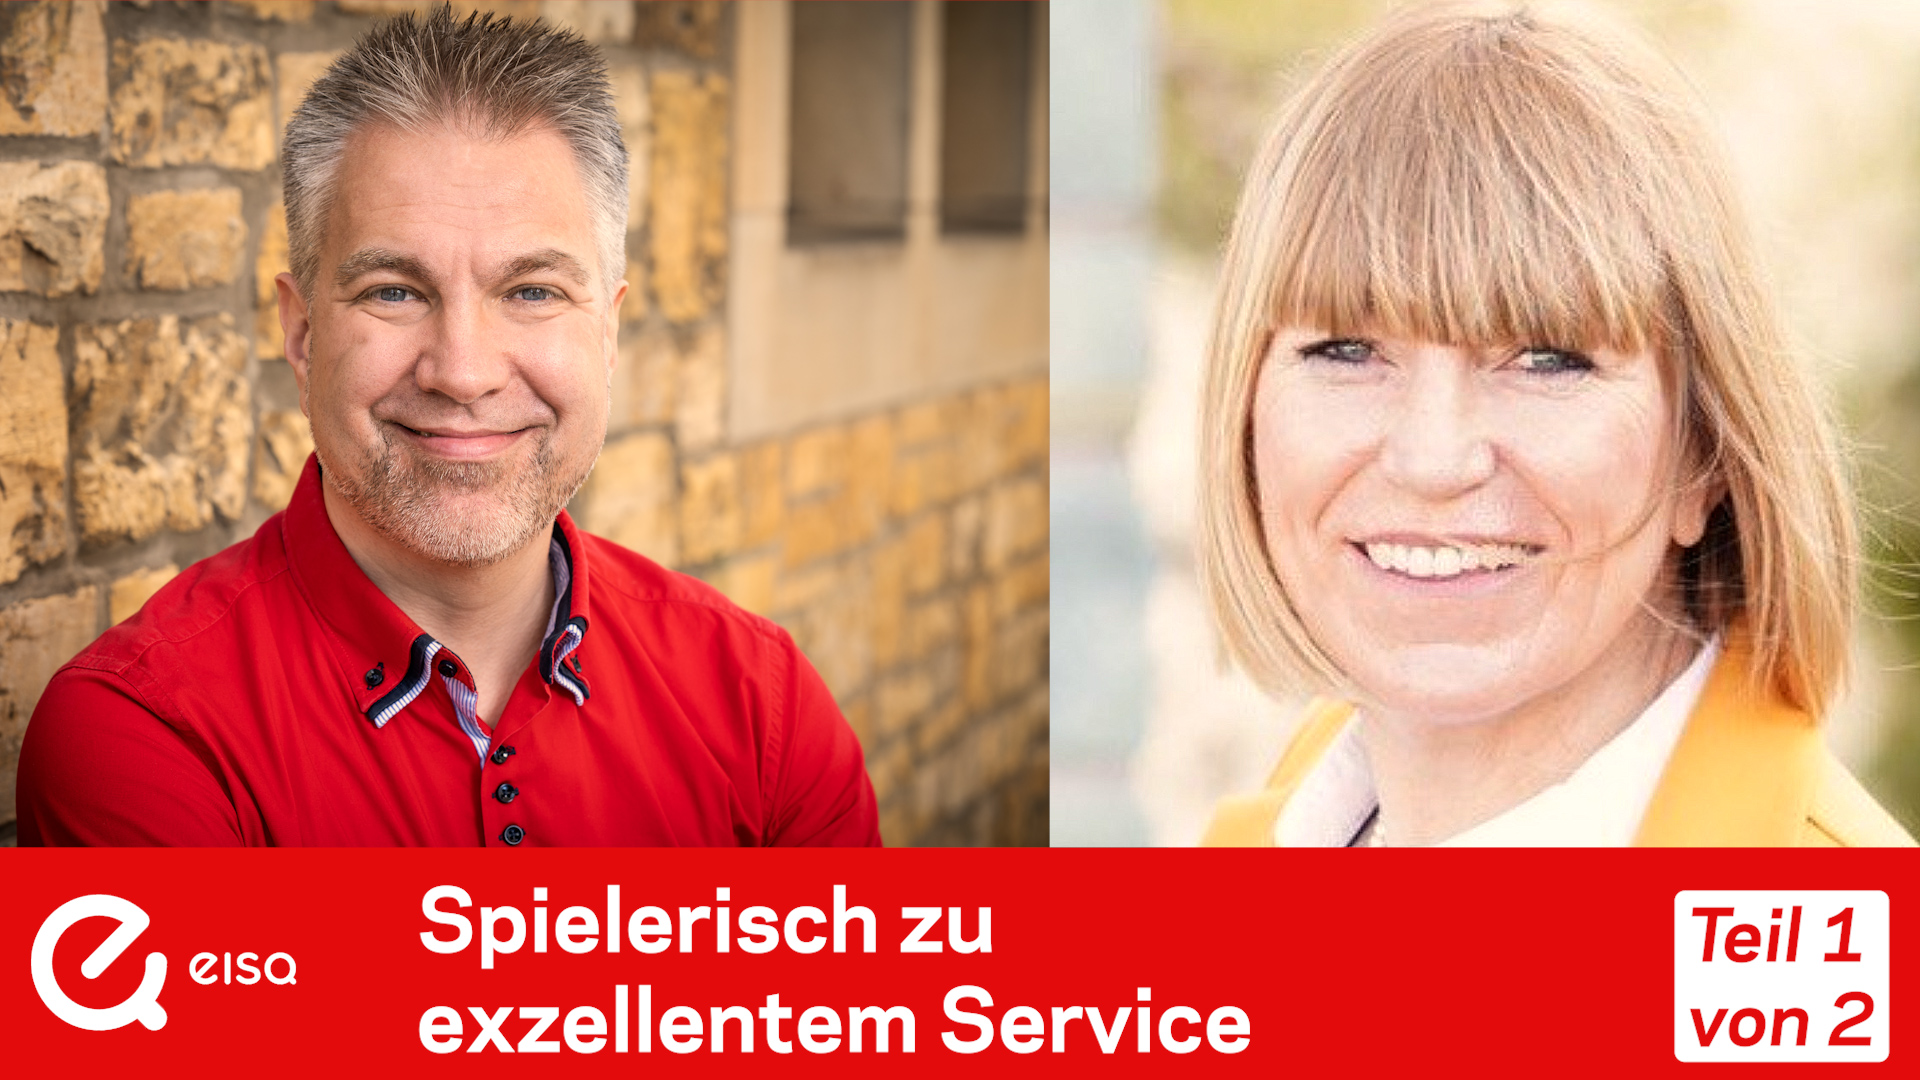 Spielerisch zu exzellentem Service Ulrike Dolle Bernhard Gandolf Outsourcing als kreative Lösung im Vendor Management